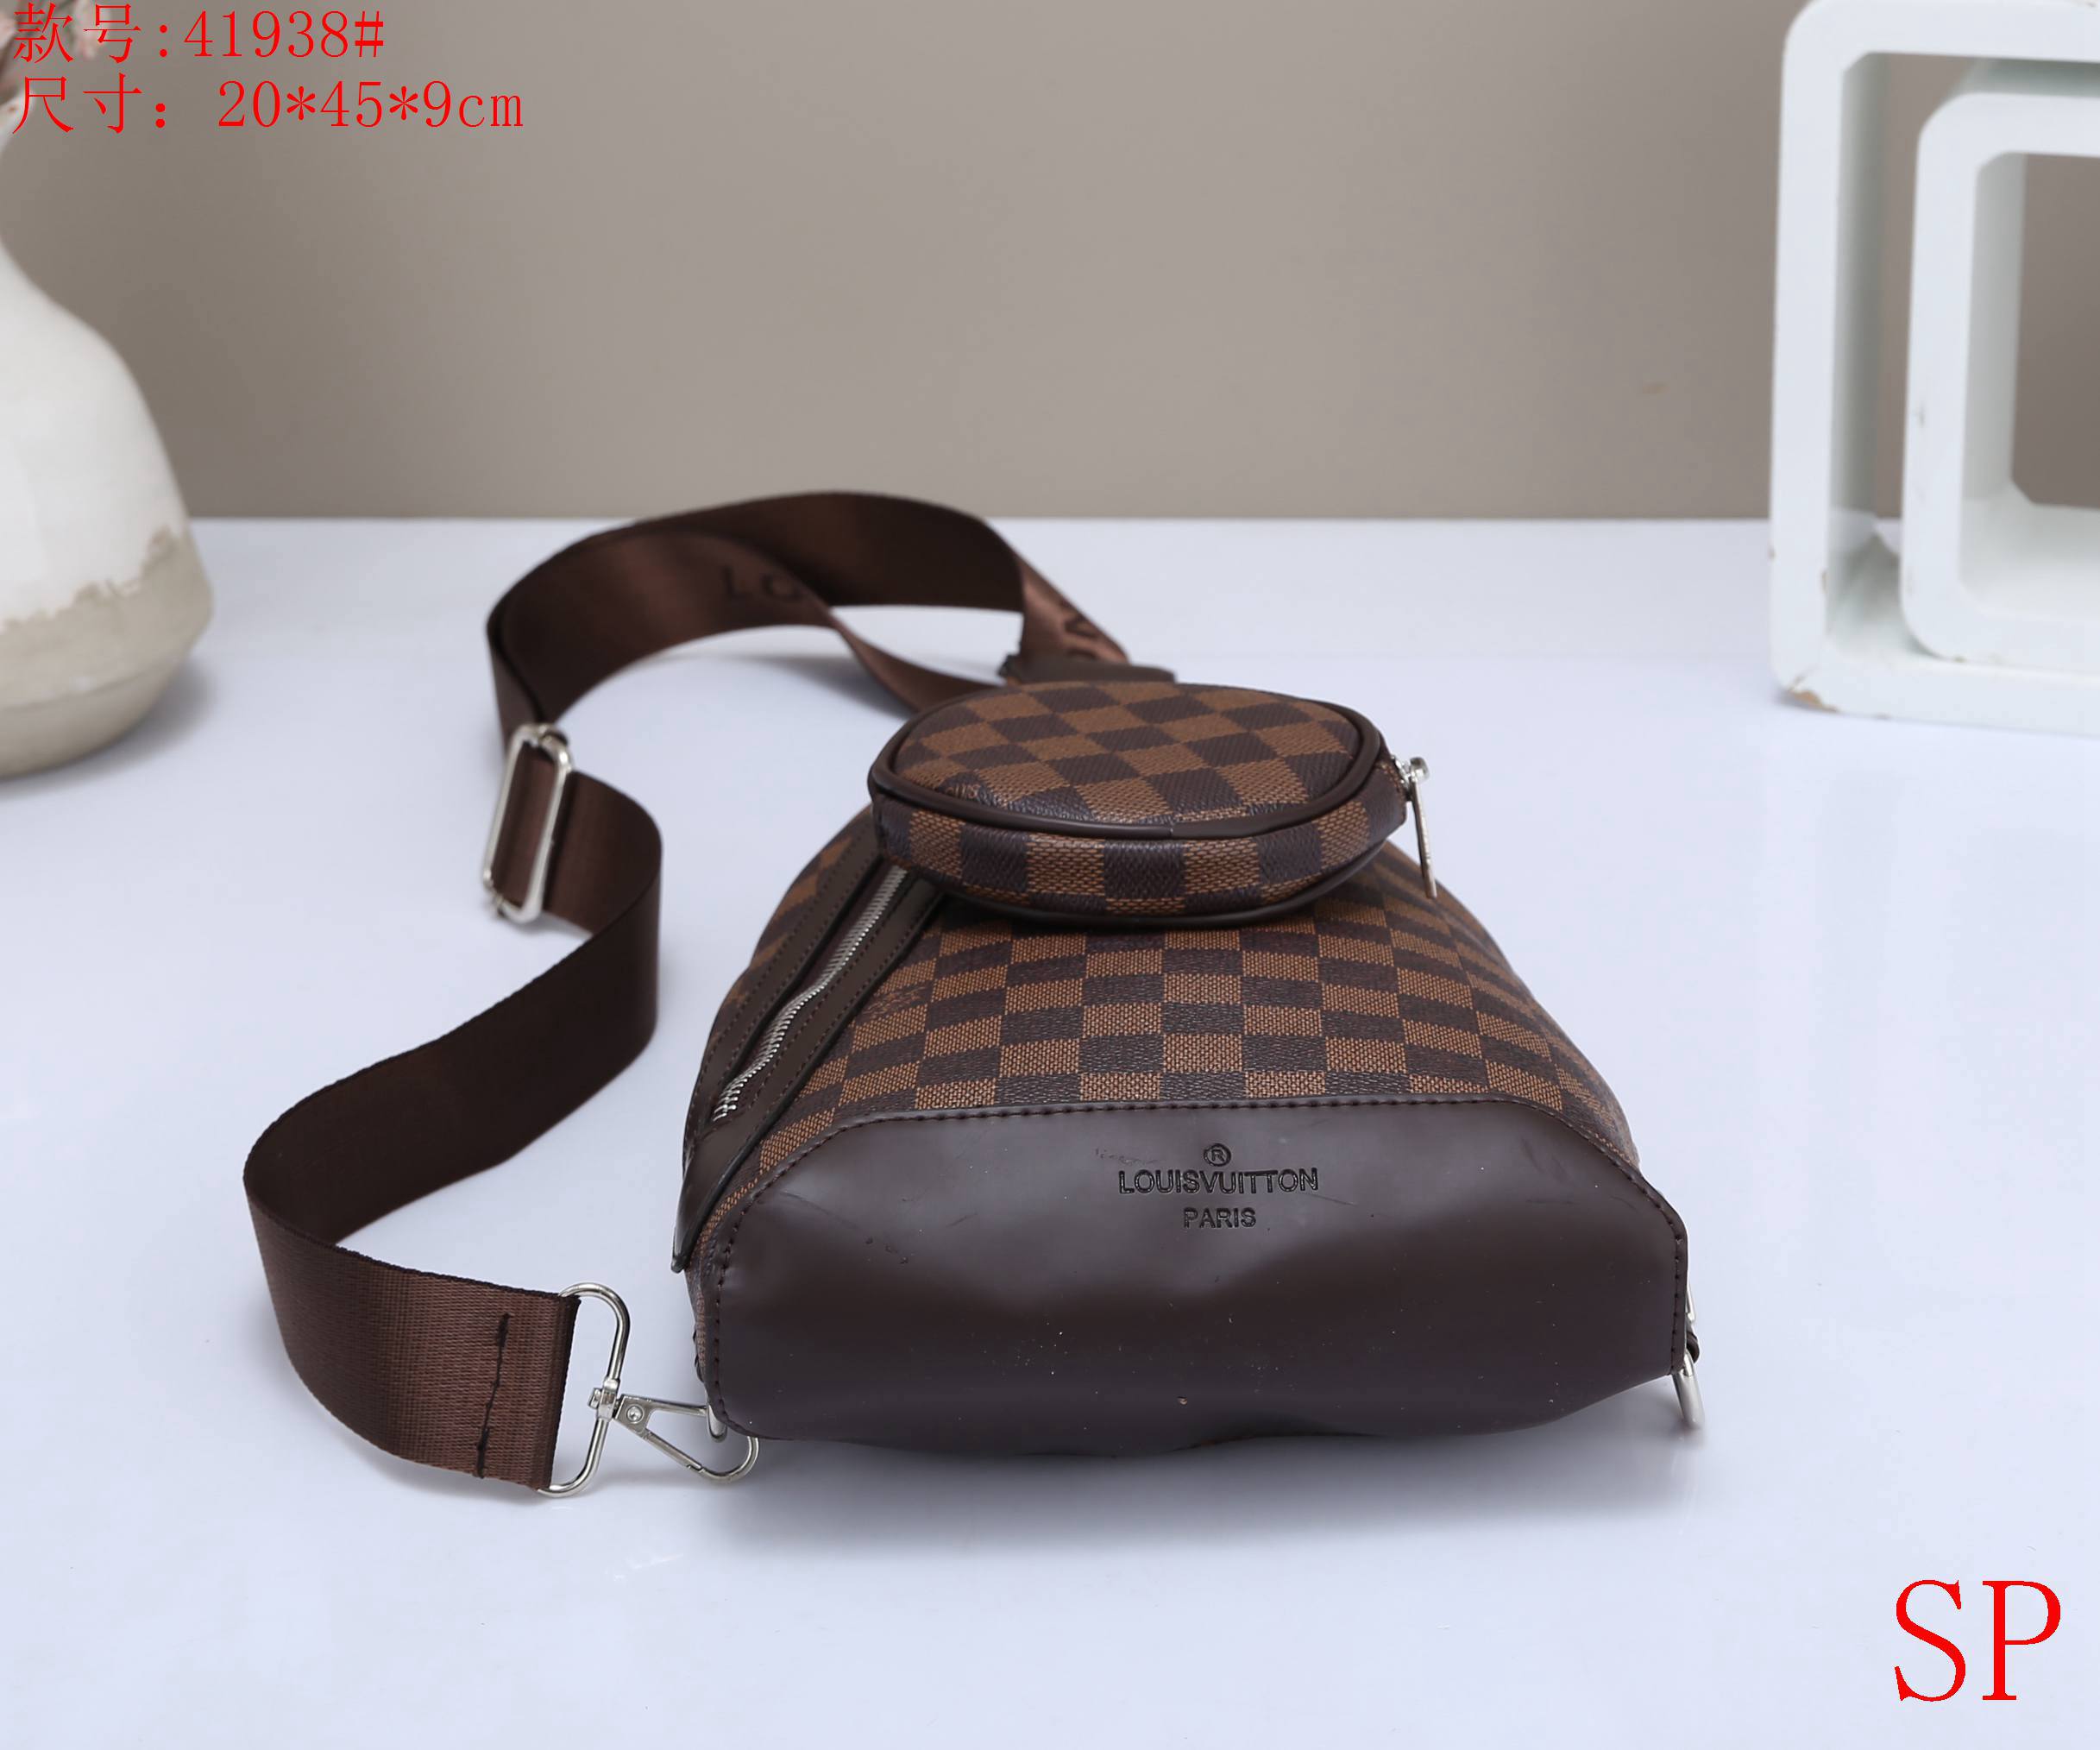 Louis Vuitton Slingbag Unisex # 270741, cheap LV Satchels, only $45!